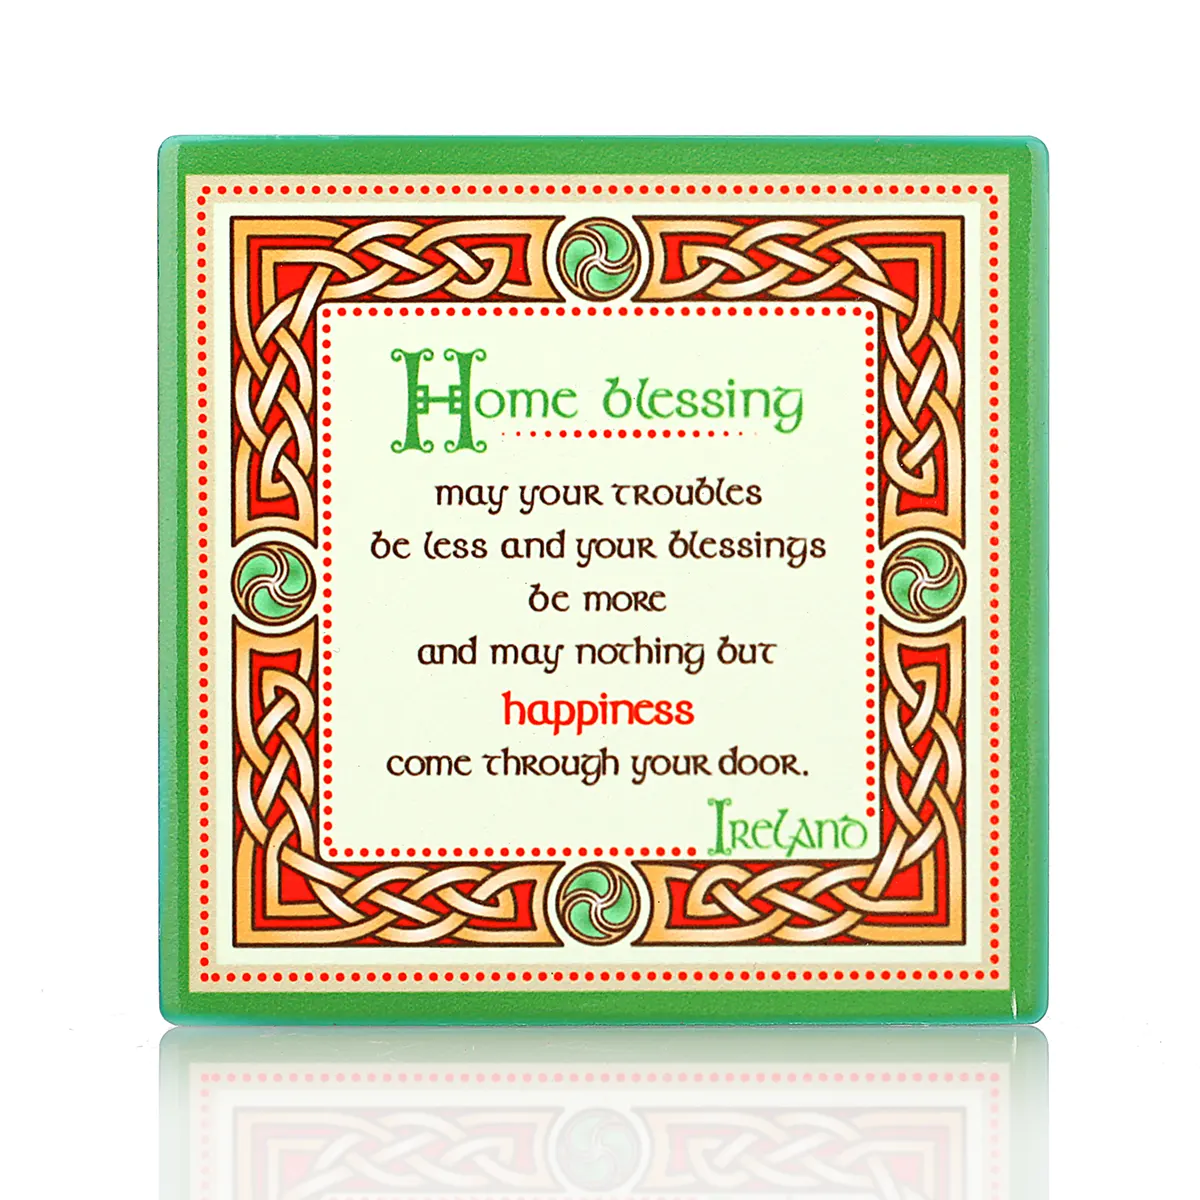 Irish Home Blessing Coaster - Keltischer Keramik-Getränkeuntersetzer aus Irland